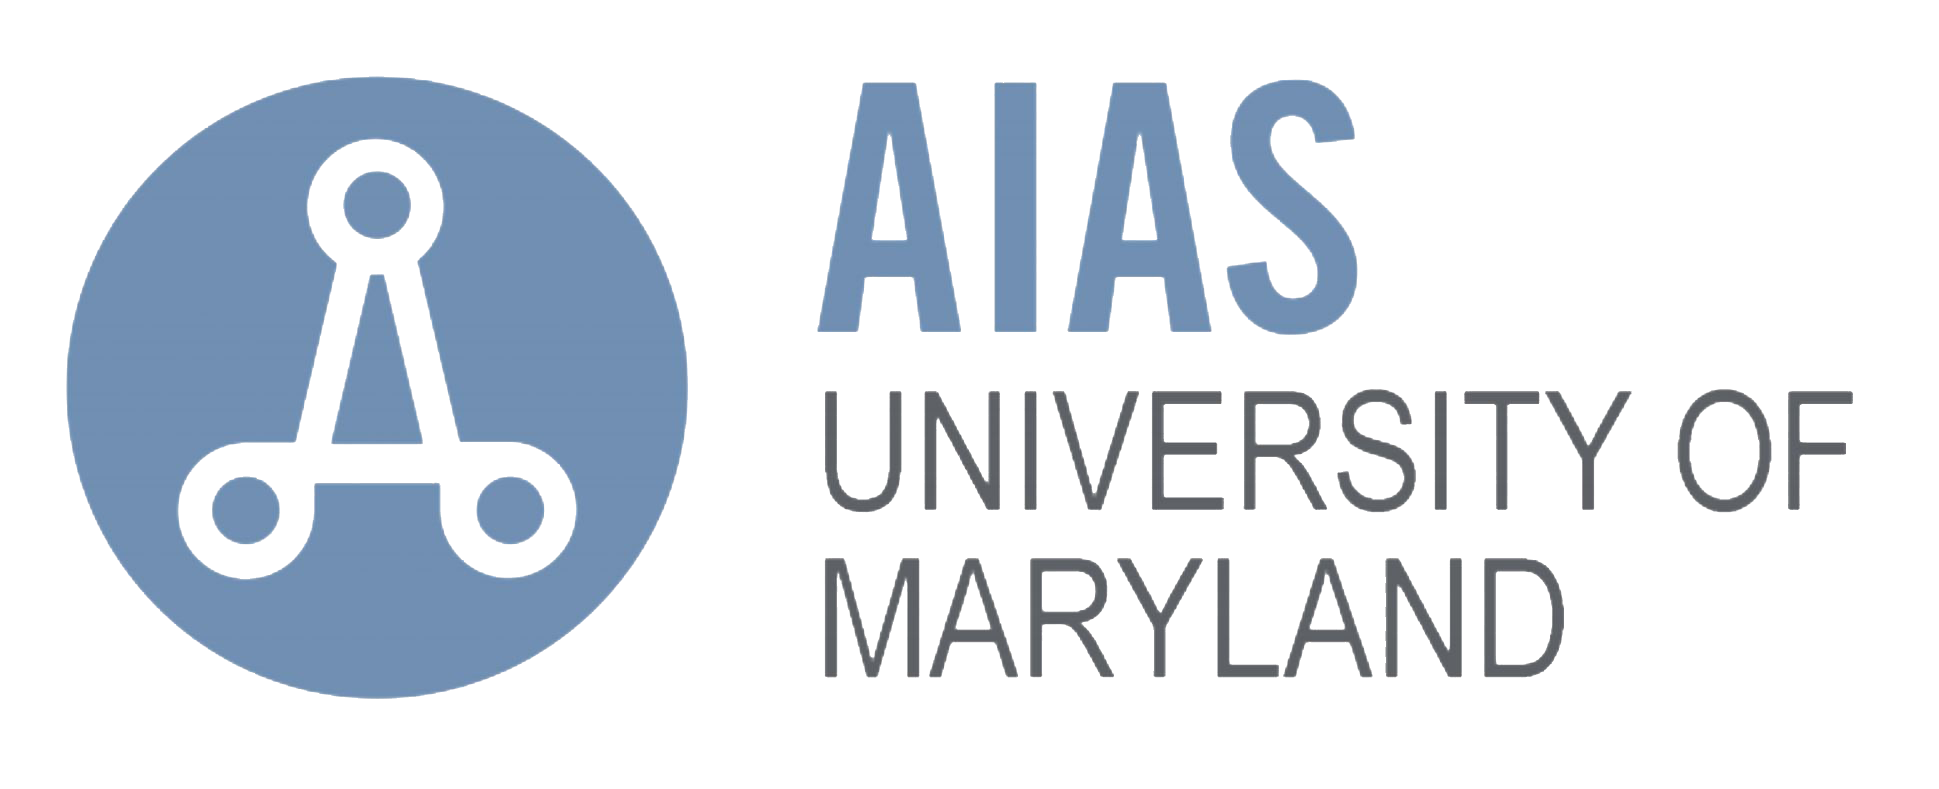 AIAS logo